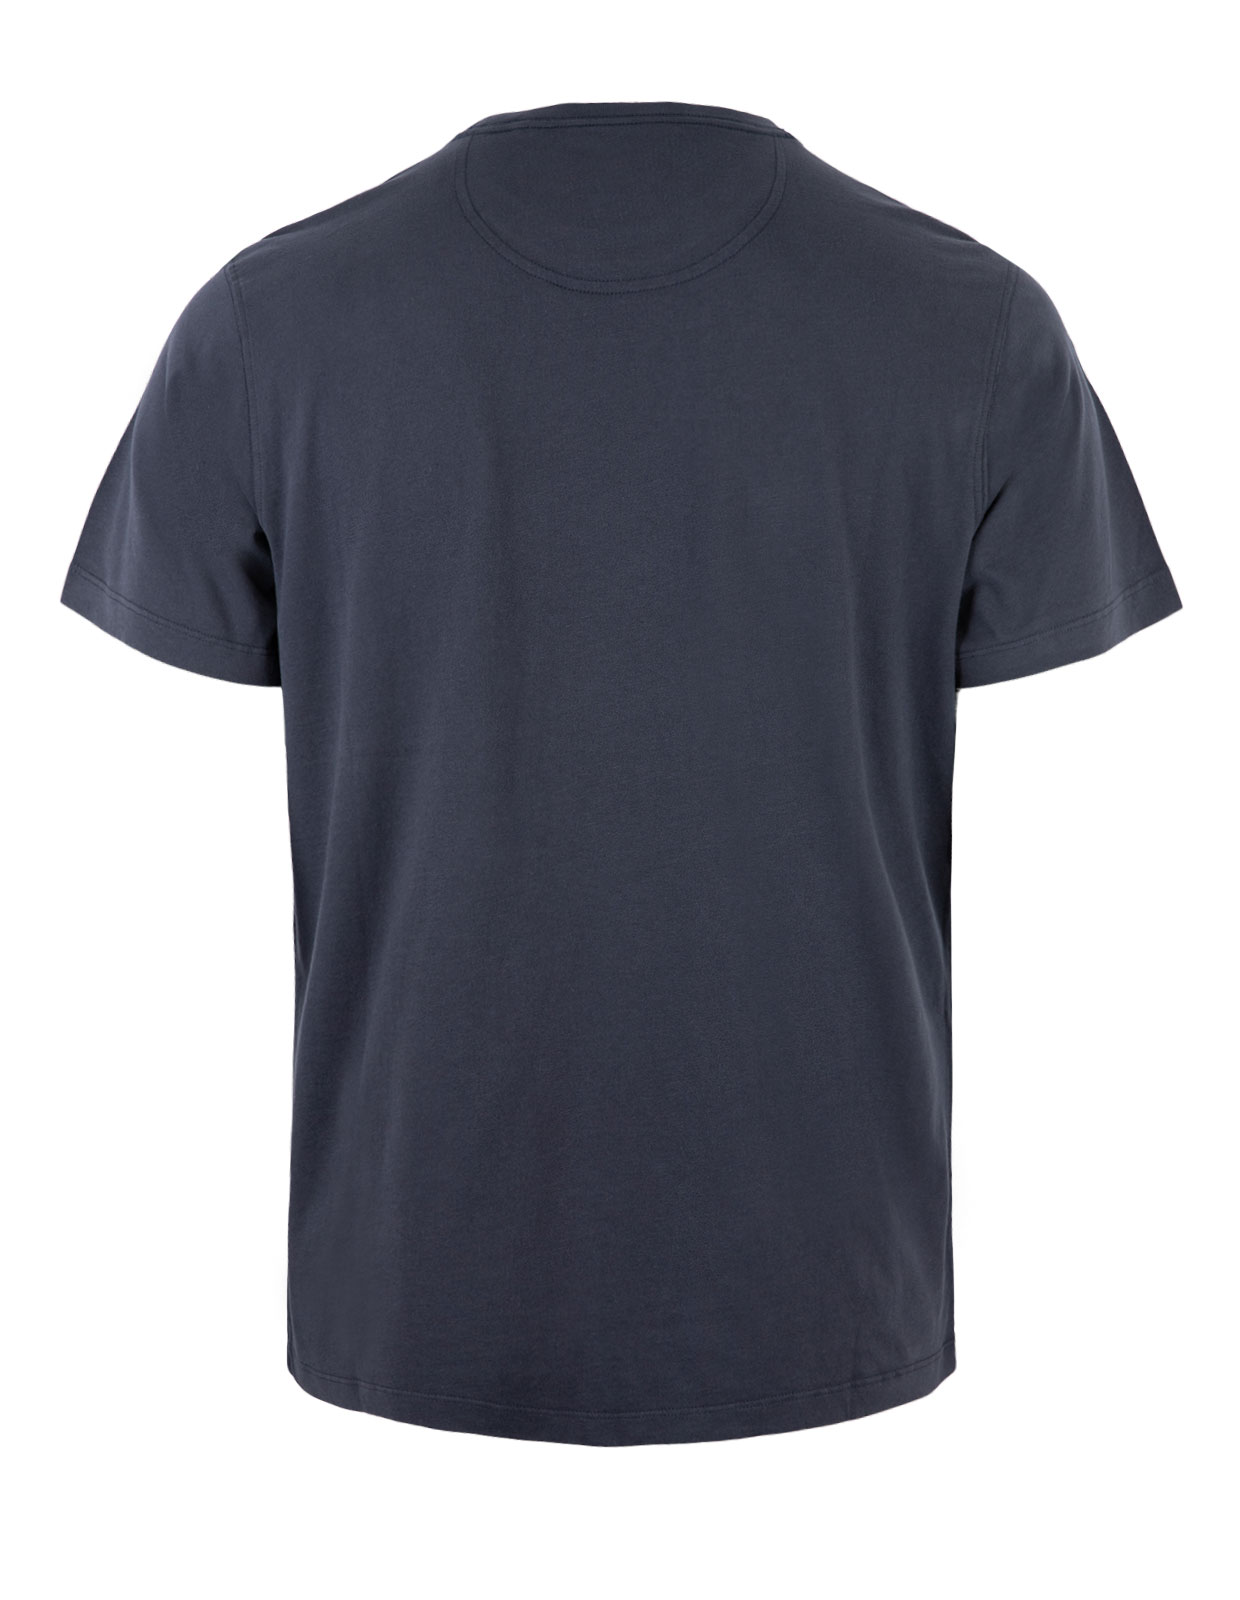 Multi Steve T-shirt Navy